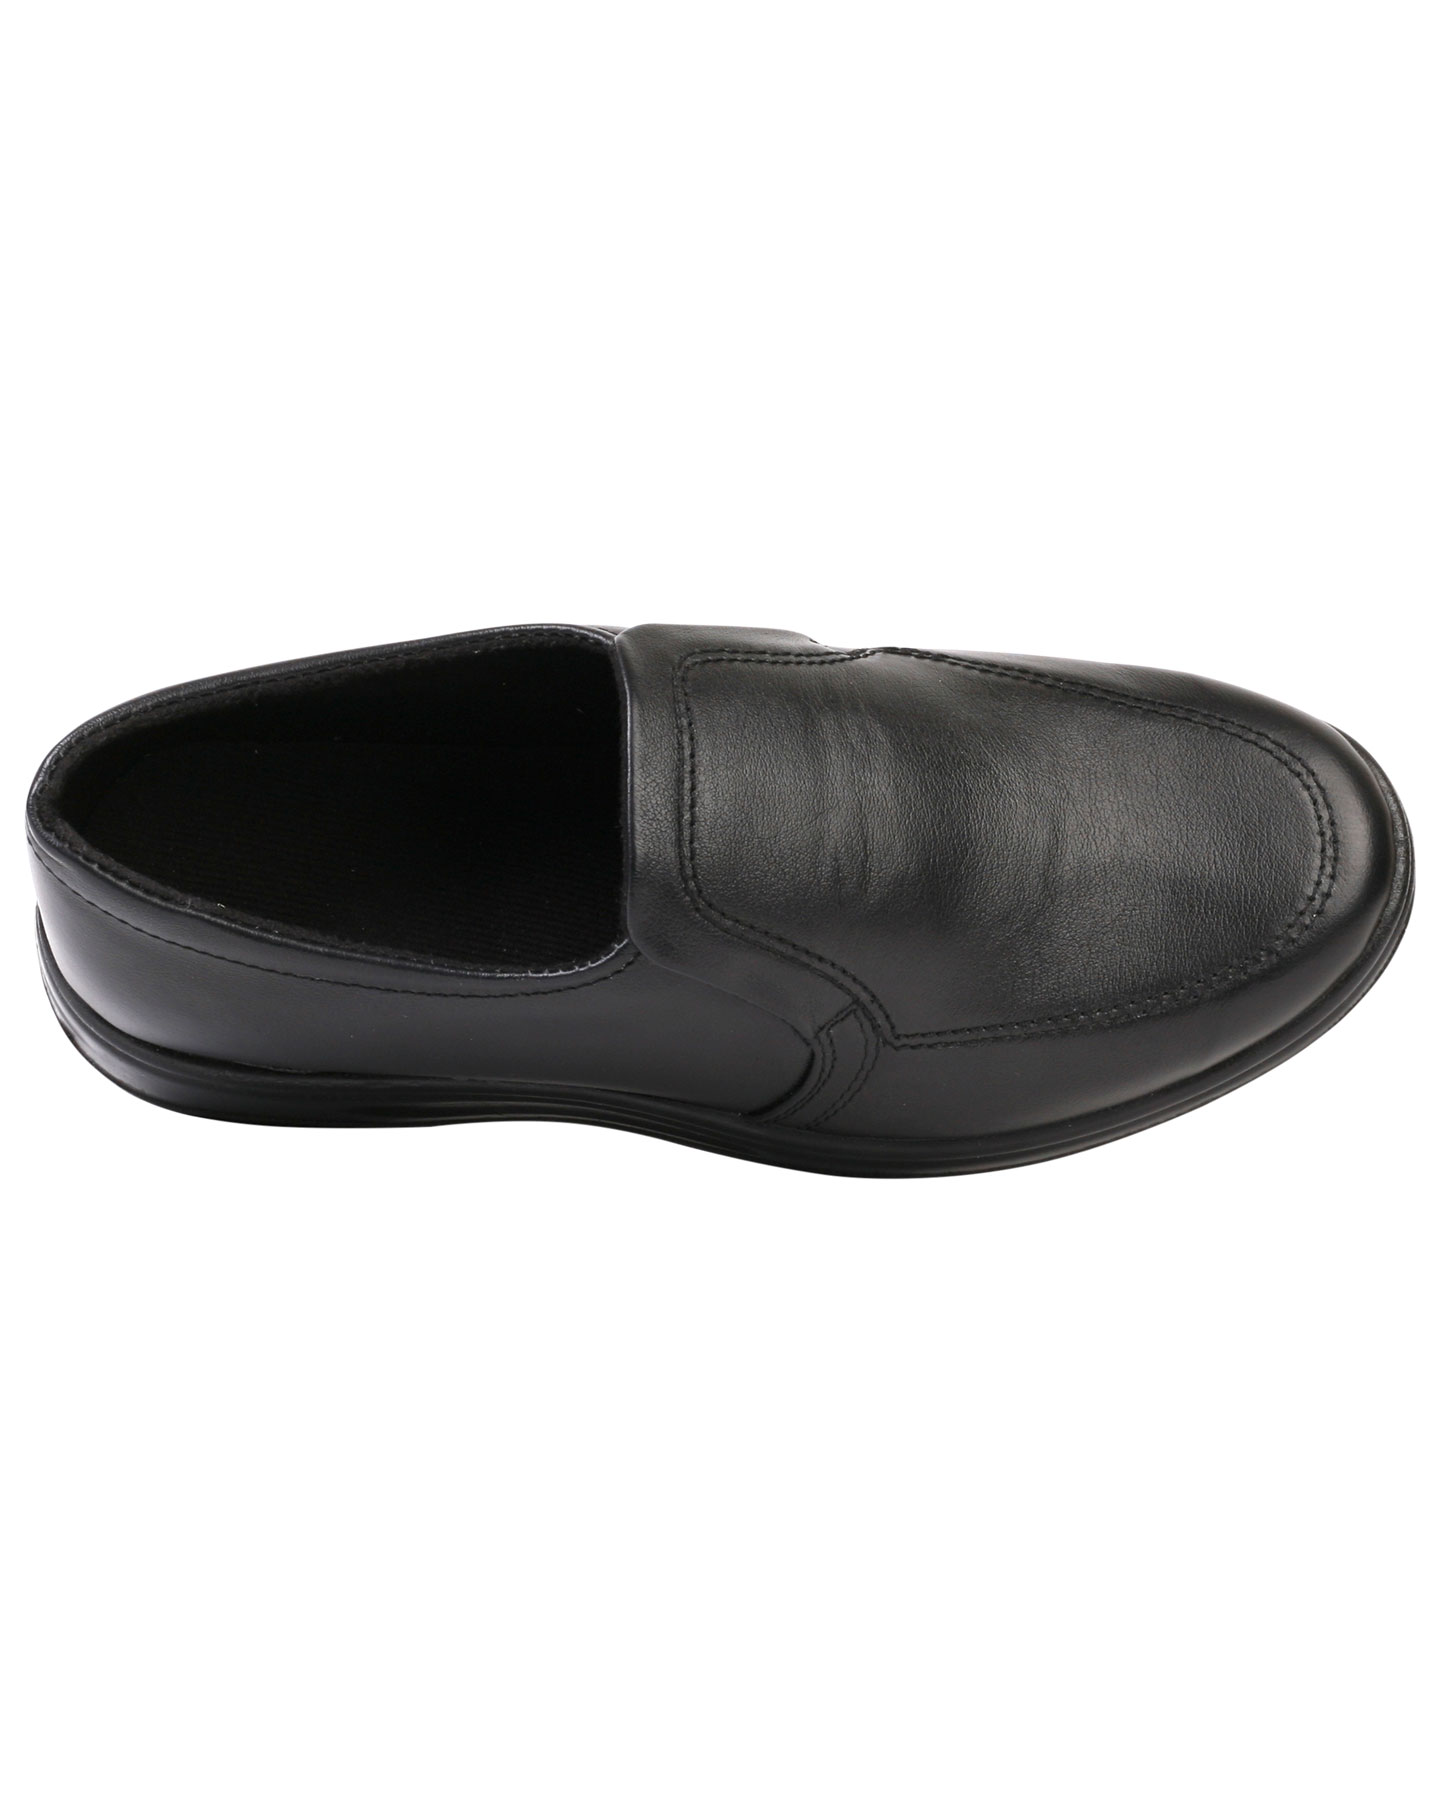 Туфли мужские на резинке черные иск. кожа — Магеллан